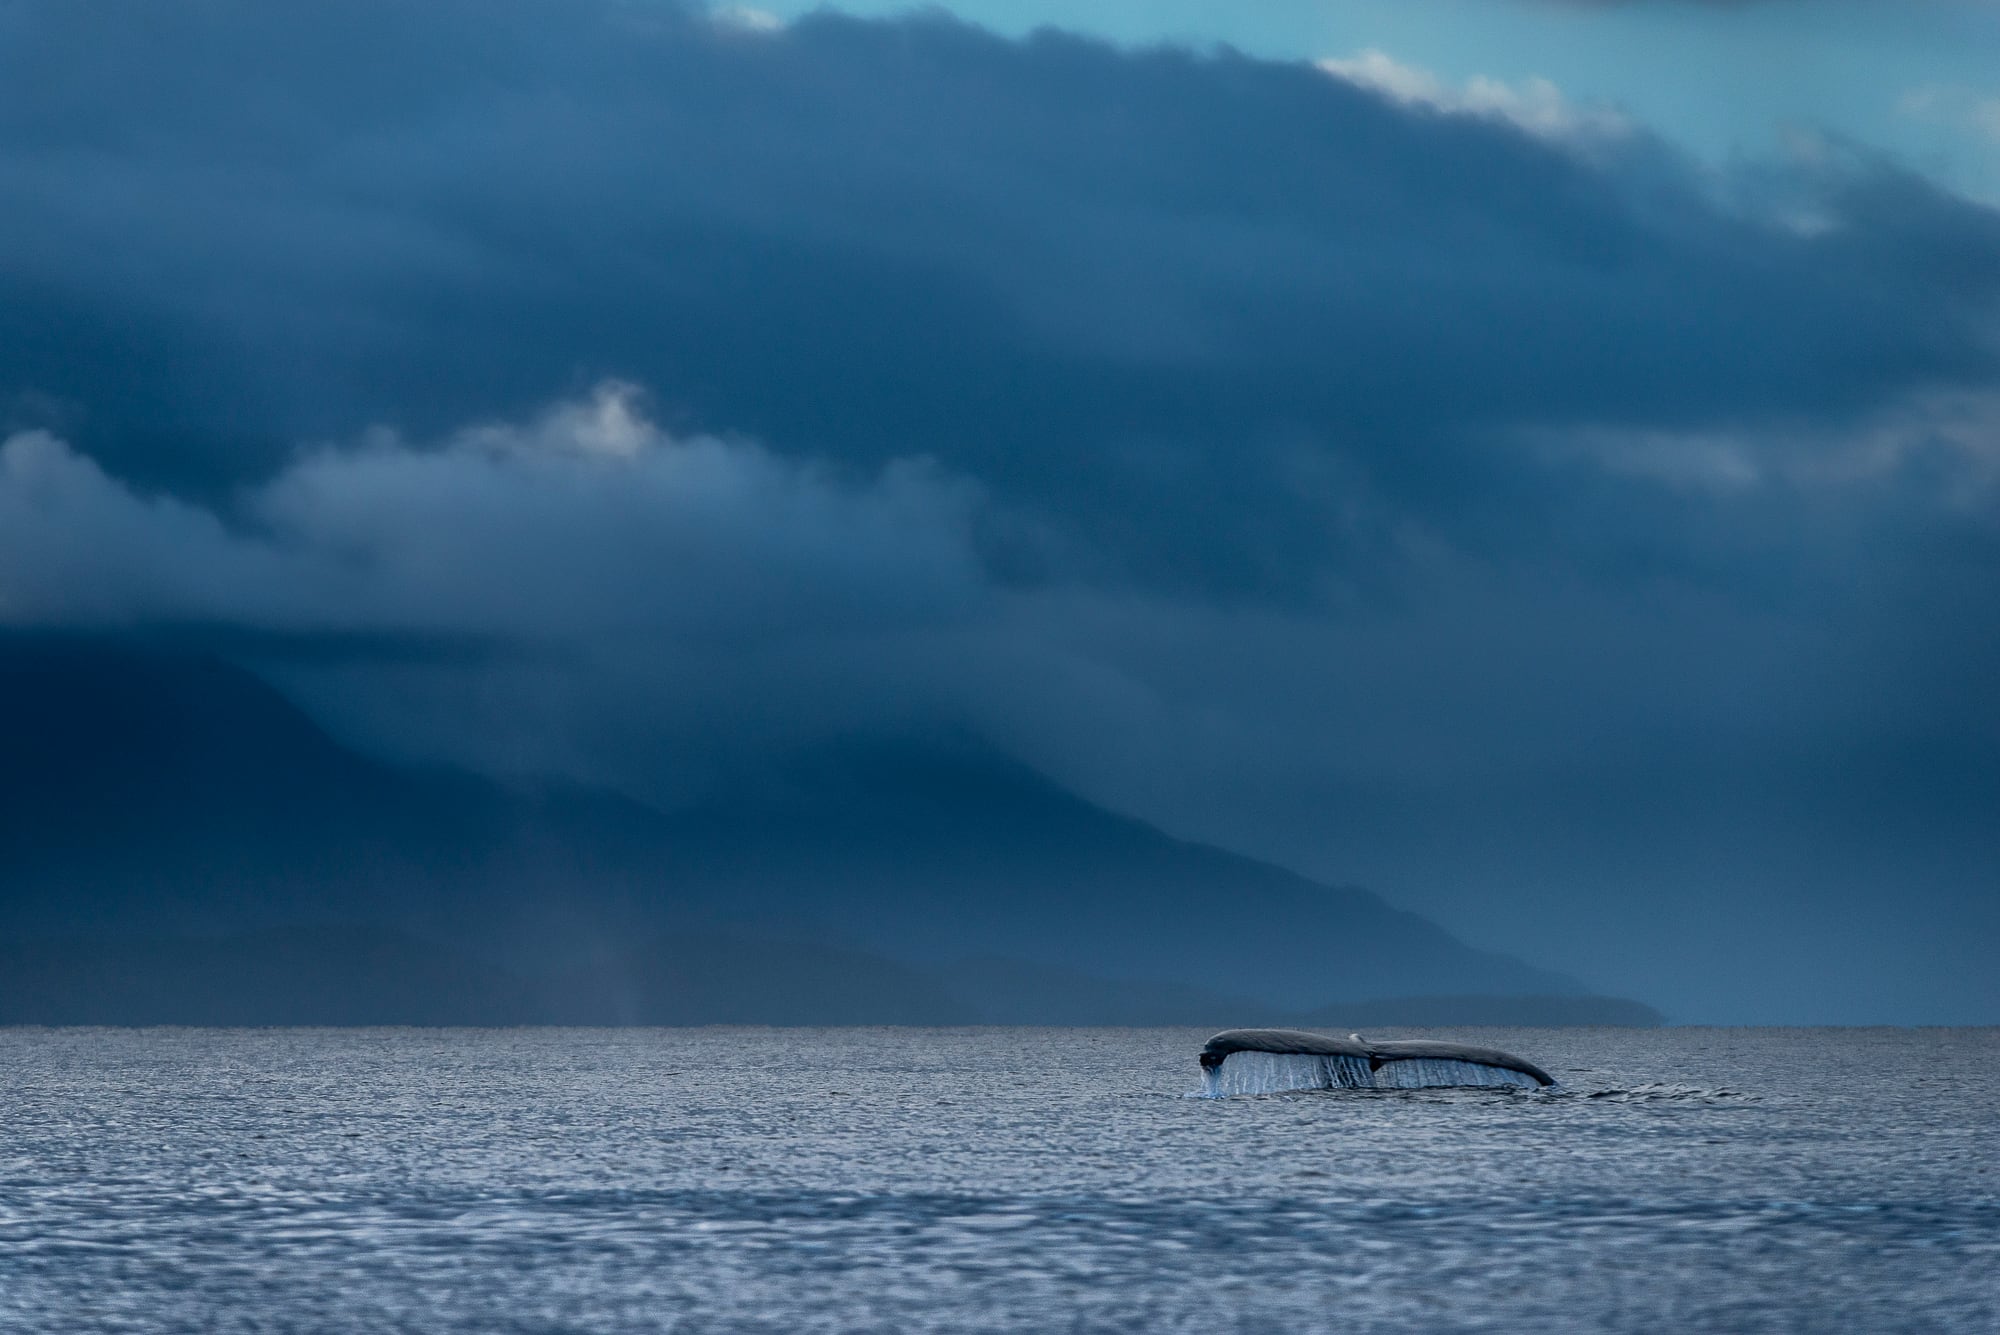 El área natural protegida se localiza a 90 kilómetros al suroeste de la ciudad de Punta Arenas, donde es posible observar ballenas jorobadas.